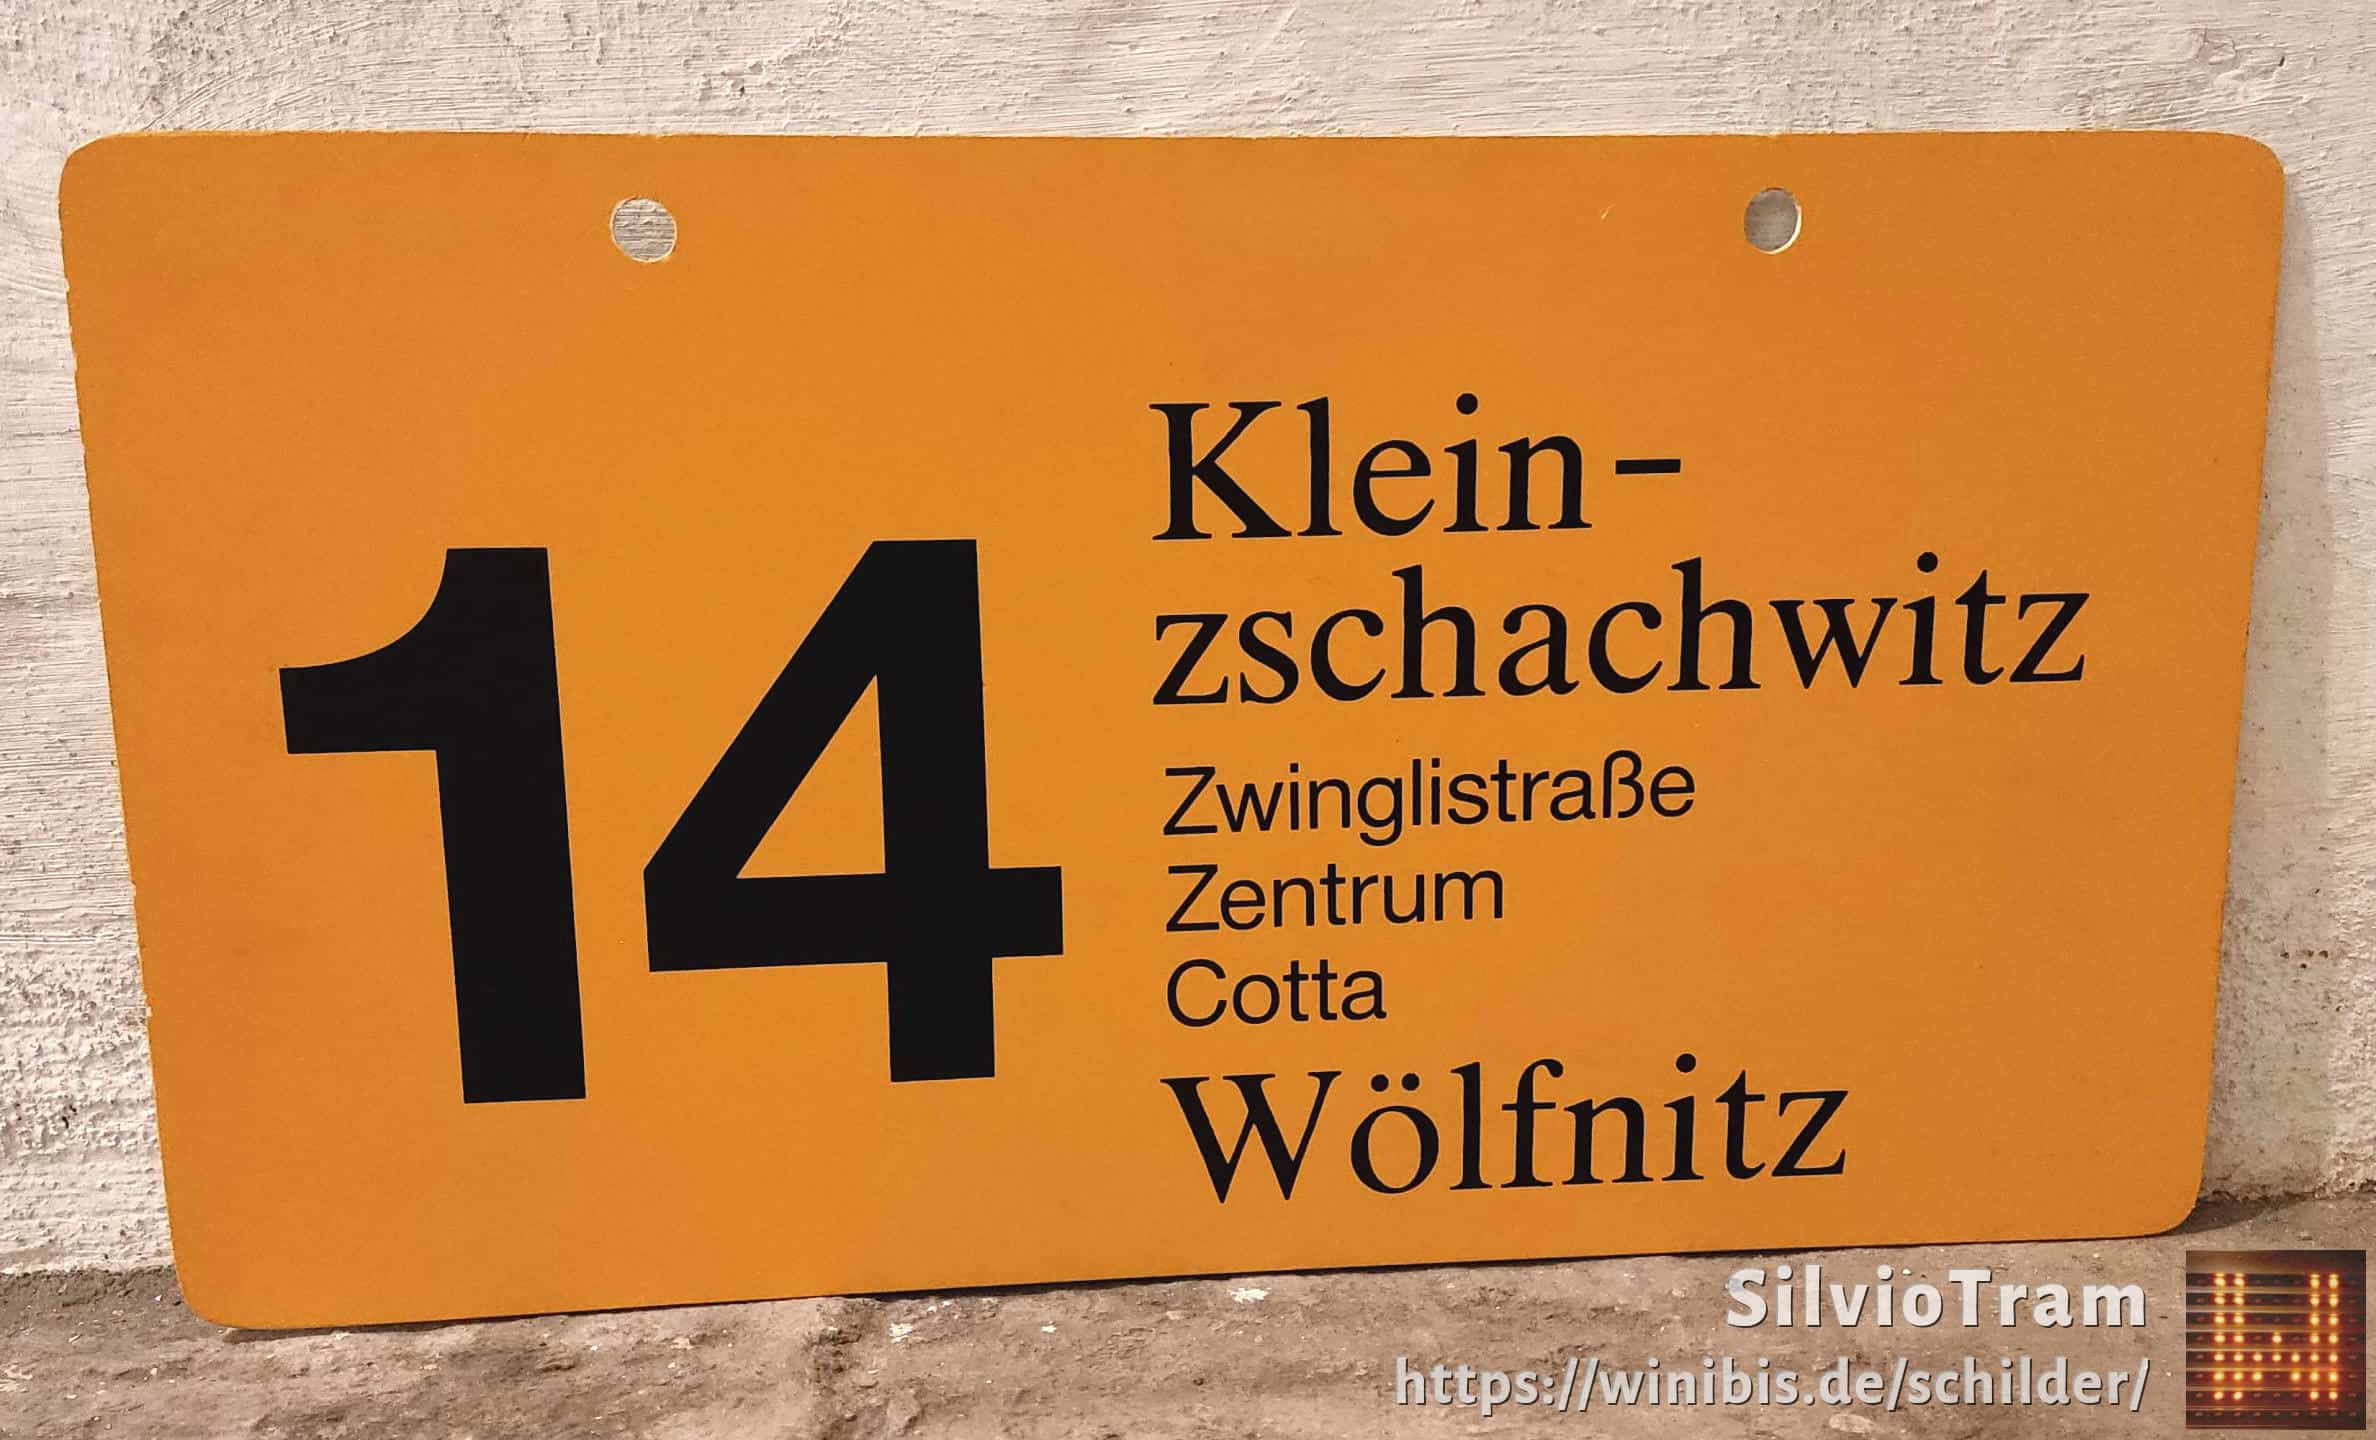 Ein seltenes Straßenbahn-Linienschild aus Dresden der Linie 14 von Kleinnach zschachwitz nach Wölfnitz #3